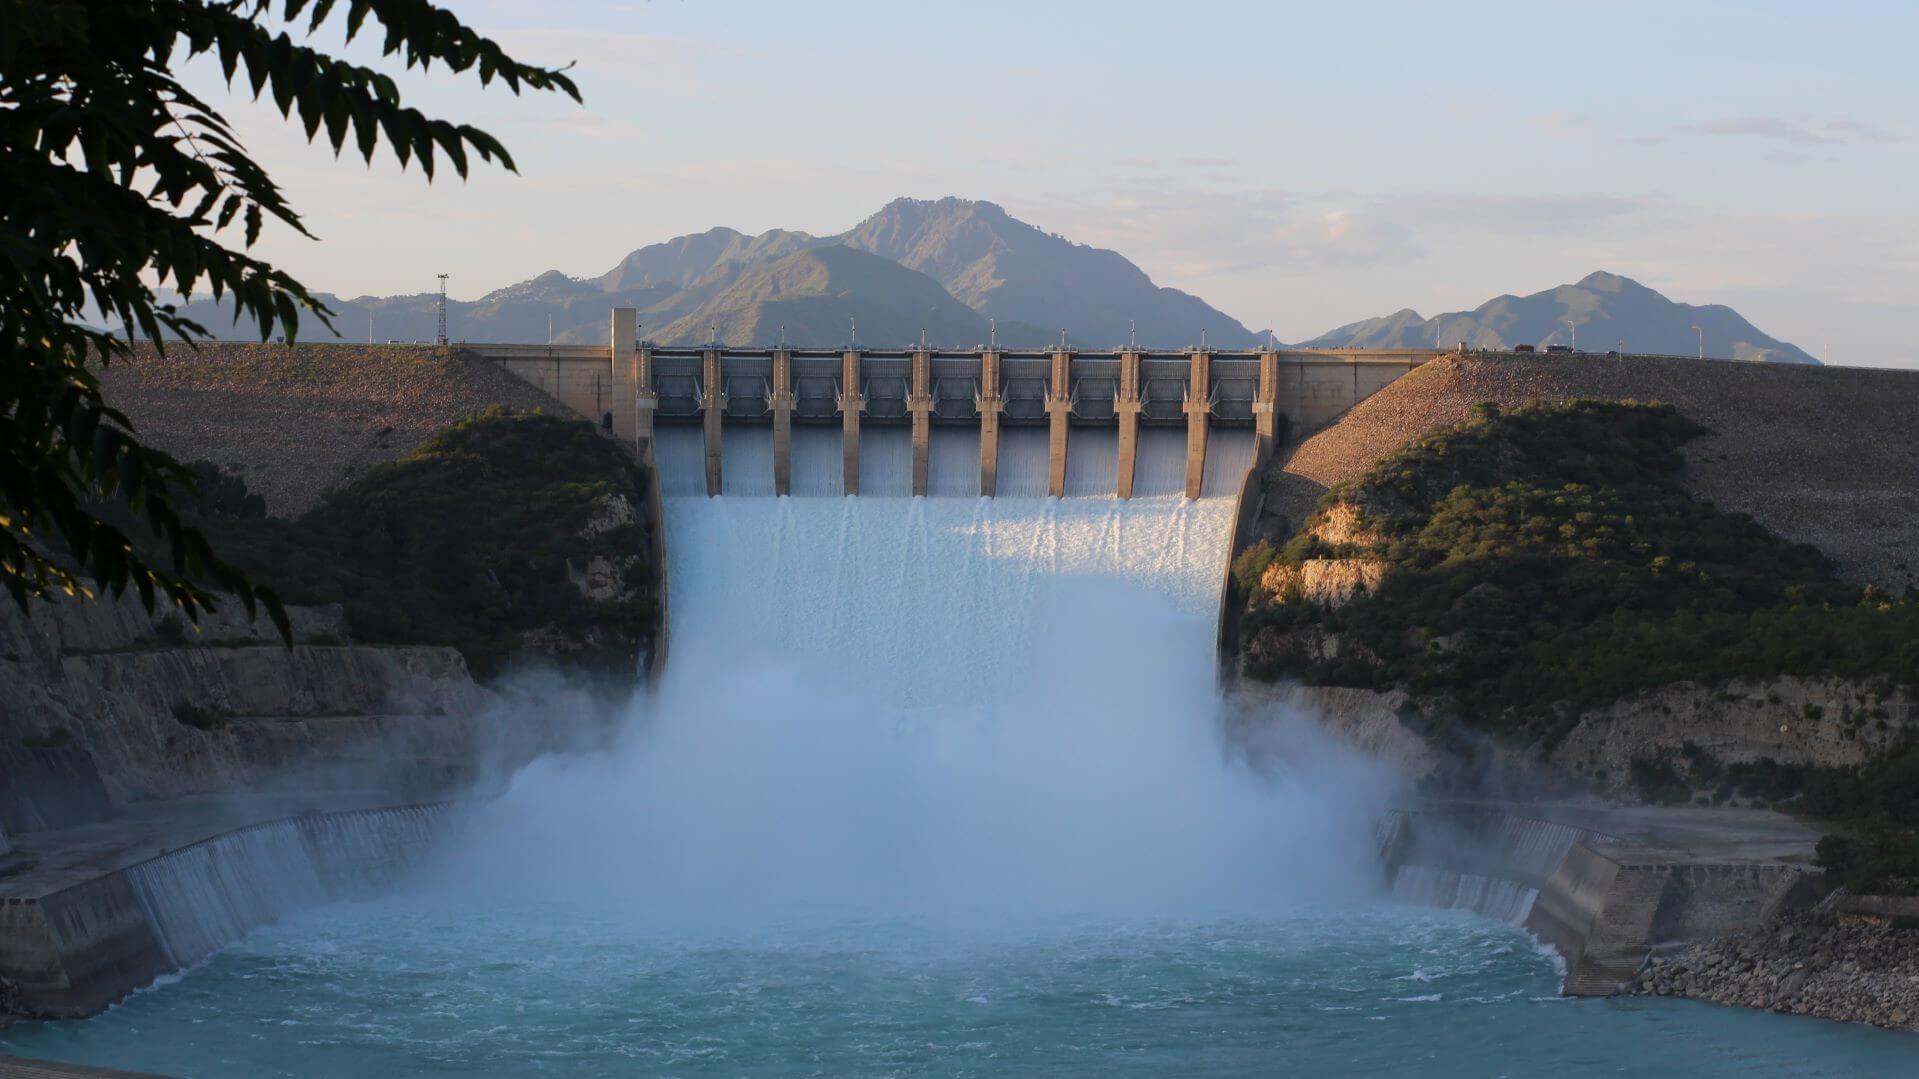 Water flowing at Pakistan's Tarbela Dam